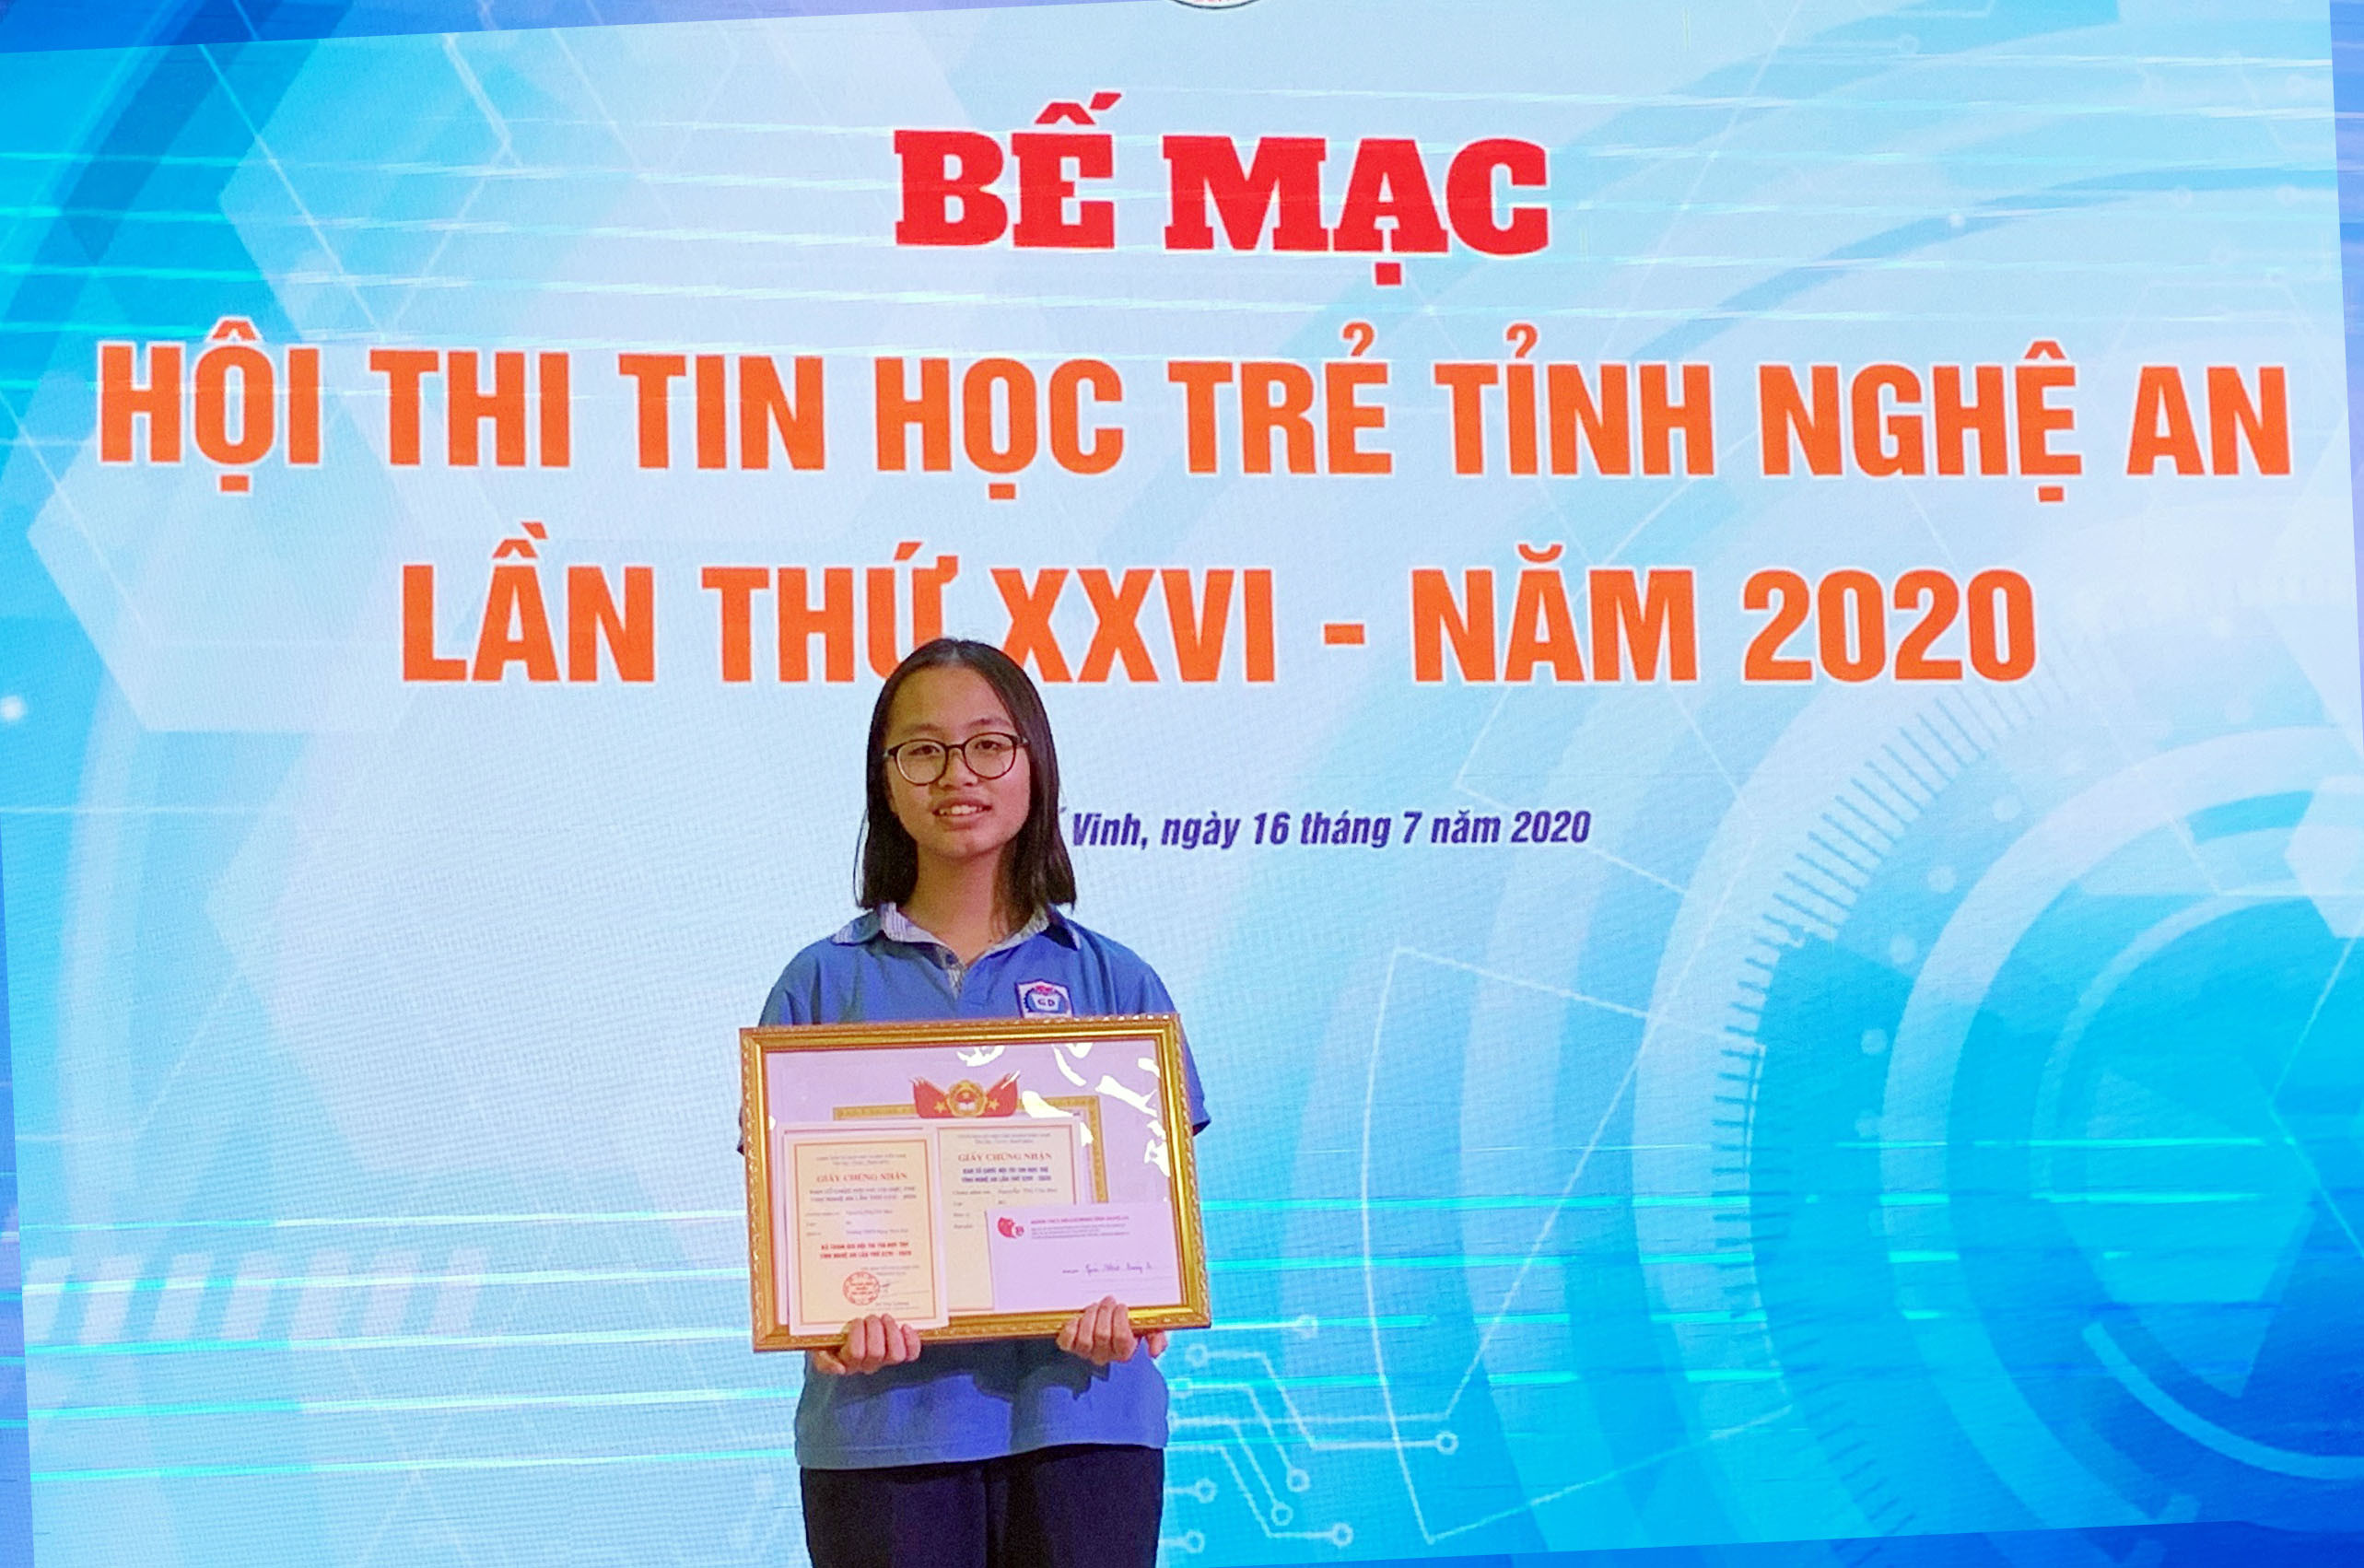 Trần Ngọc Chi Mai từng đạt giải Nhất cuộc thi Tin học trẻ cấp tỉnh. Ảnh: NVCC.